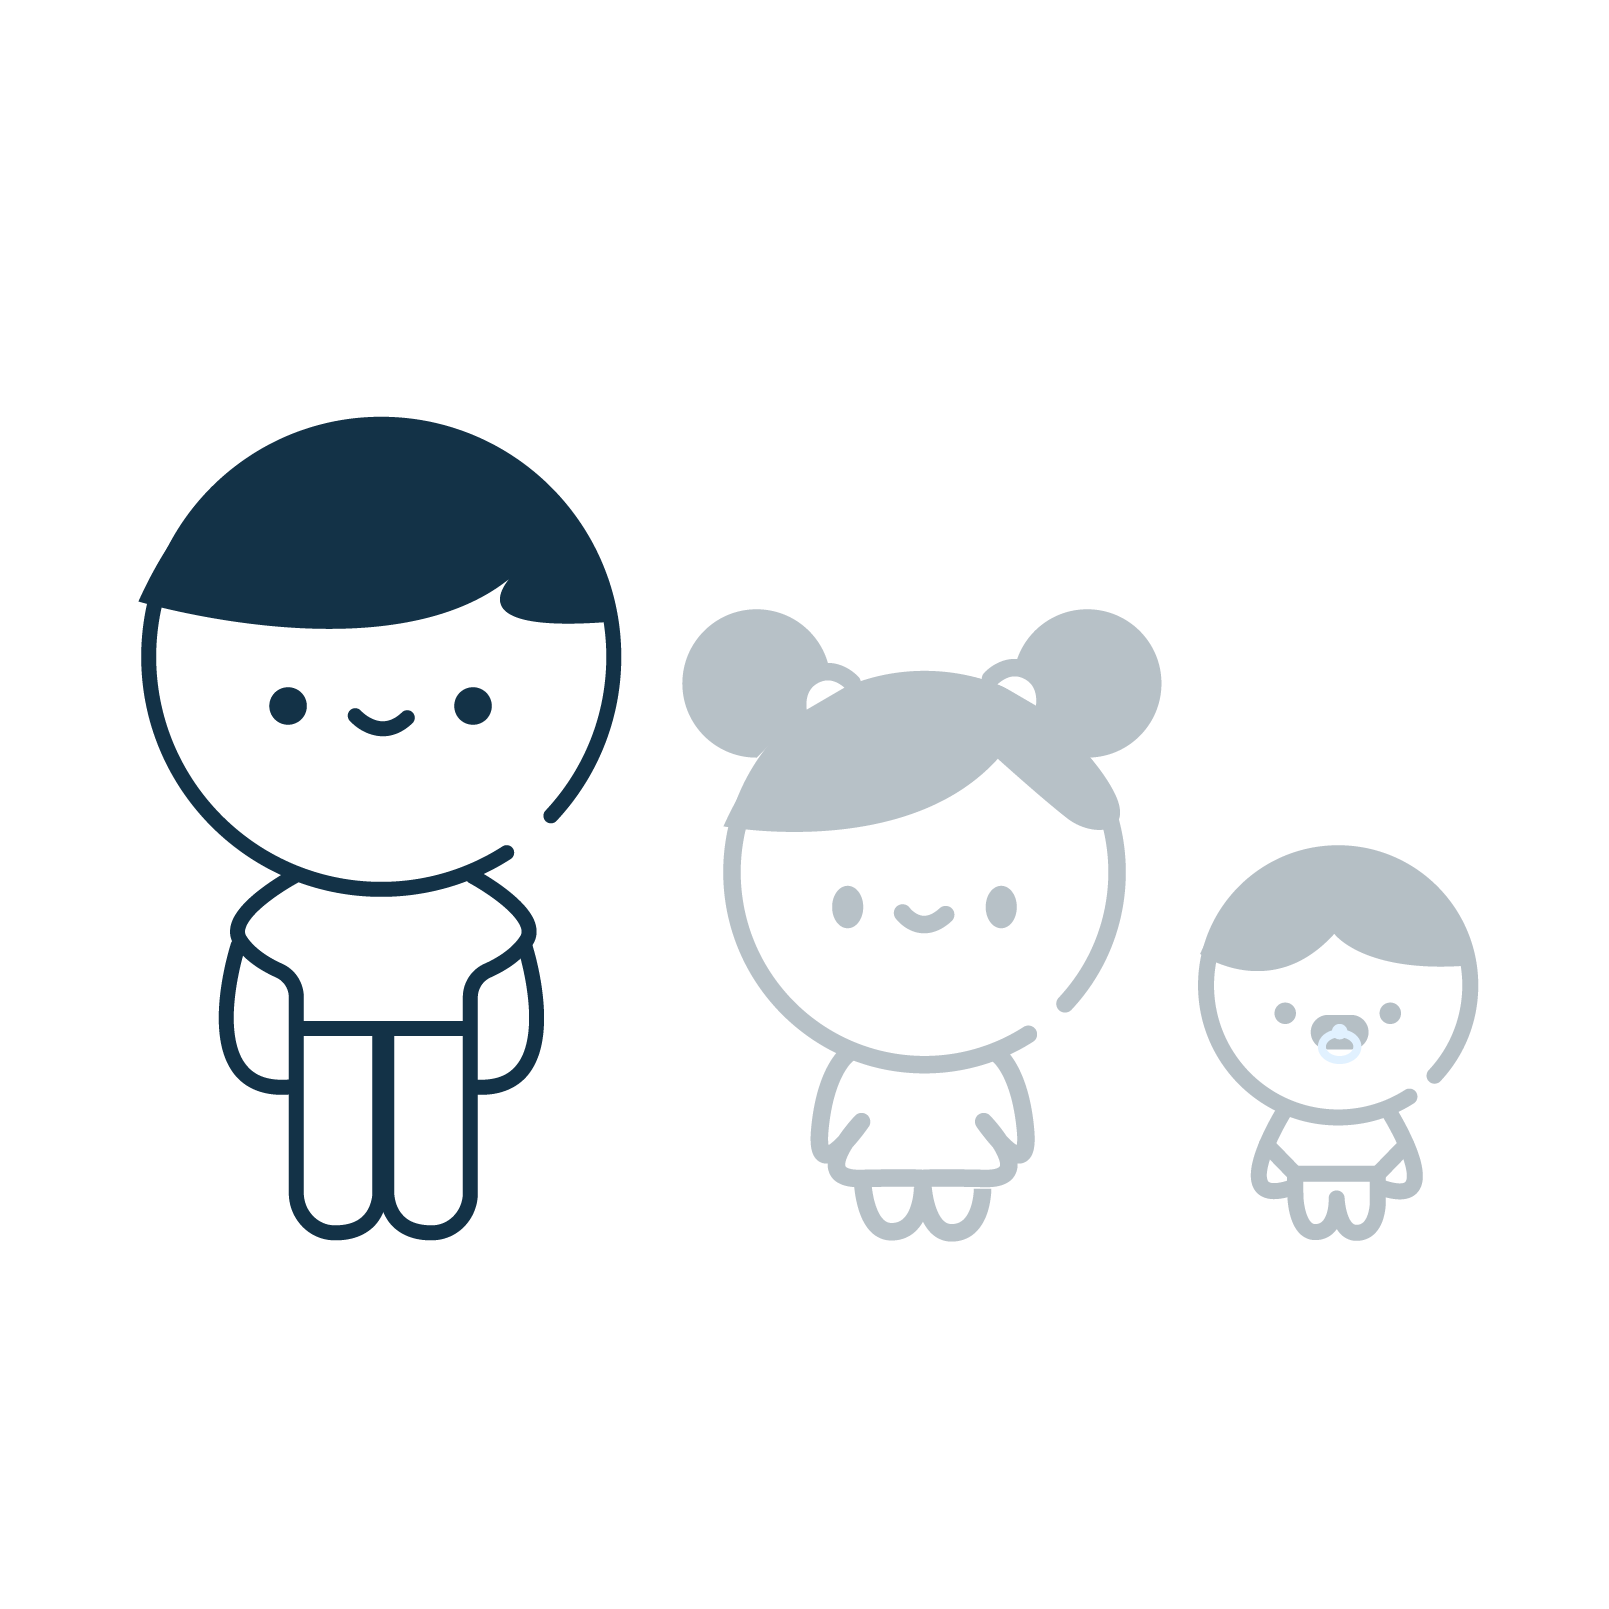 icone représentant un adulte, un enfant et un bébé, l'enfant et le bébé sont grisé, l'adulte est couleur bleu nuit